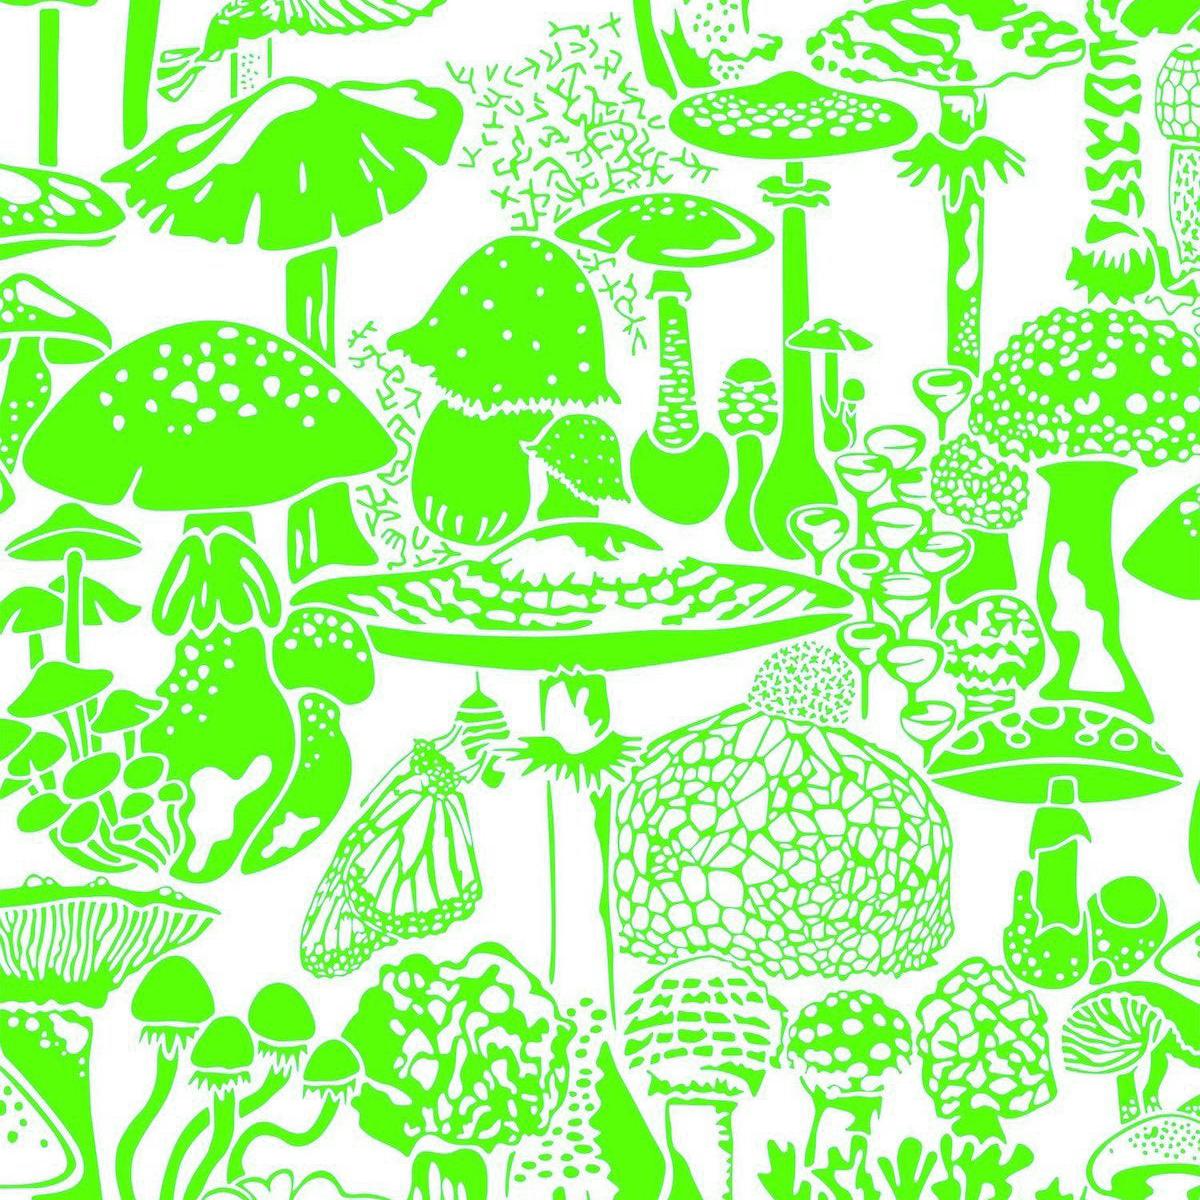 Mushroom City Designer Wallpaper in Ectoplasm 'Neon Green on Soft White' For Sale